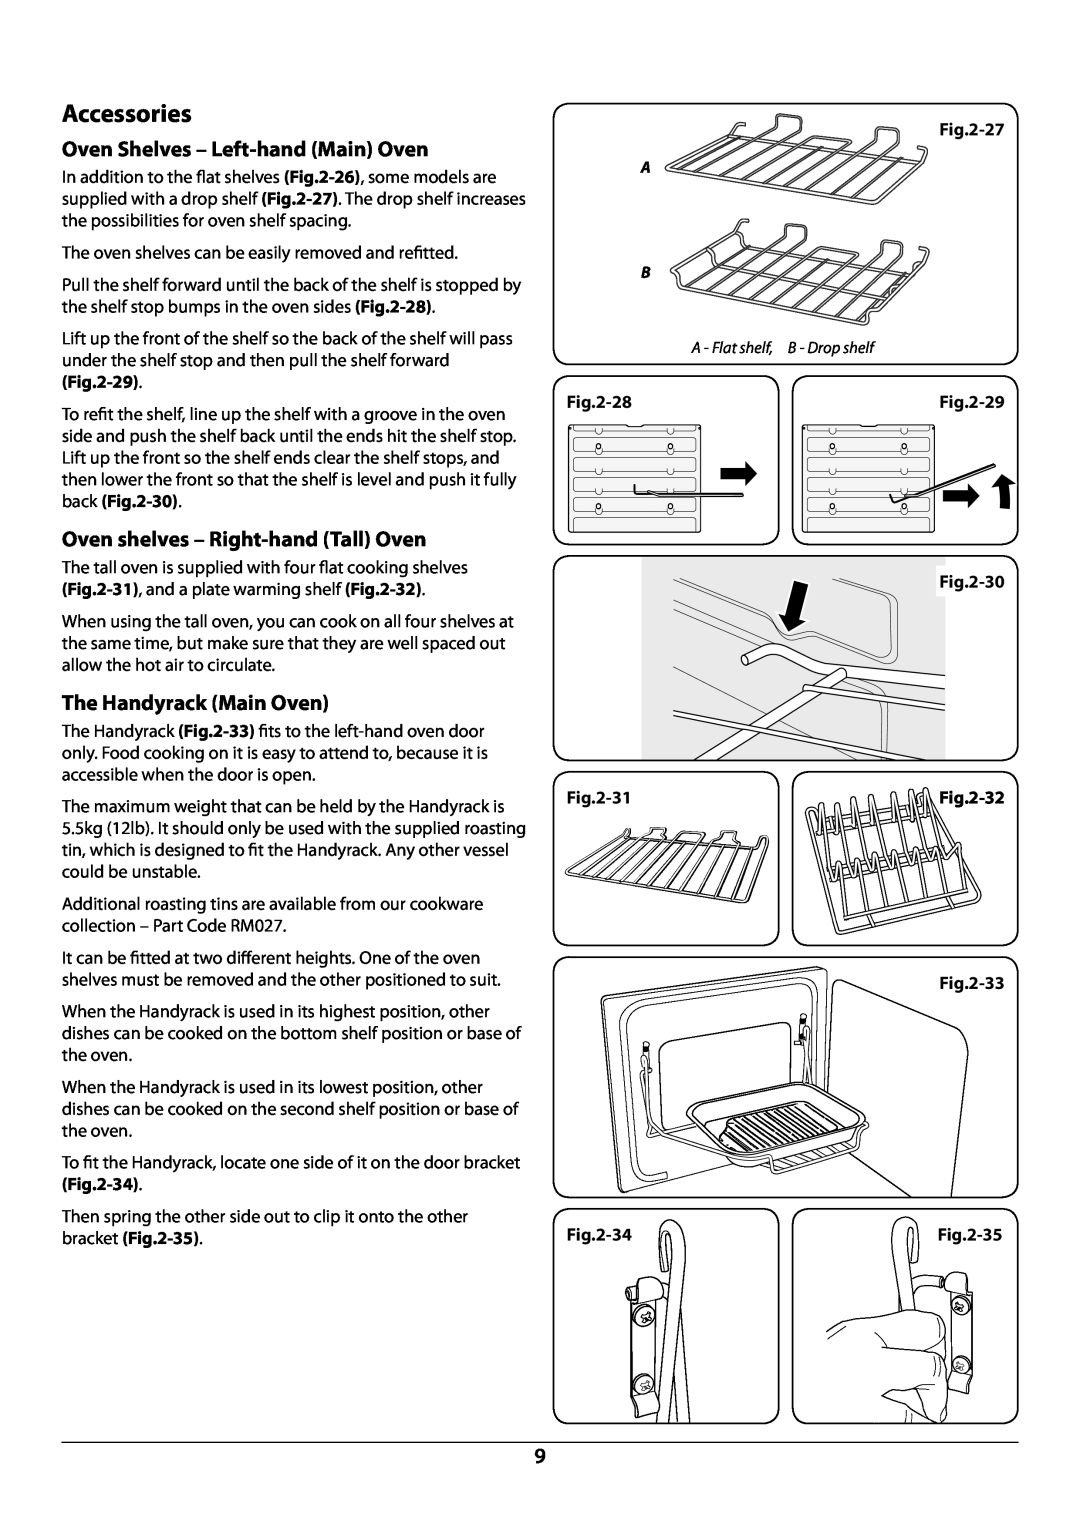 Rangemaster U109941 - 02 Accessories, Oven Shelves - Left-hand Main Oven, Oven shelves - Right-hand Tall Oven, 27, 28, 30 